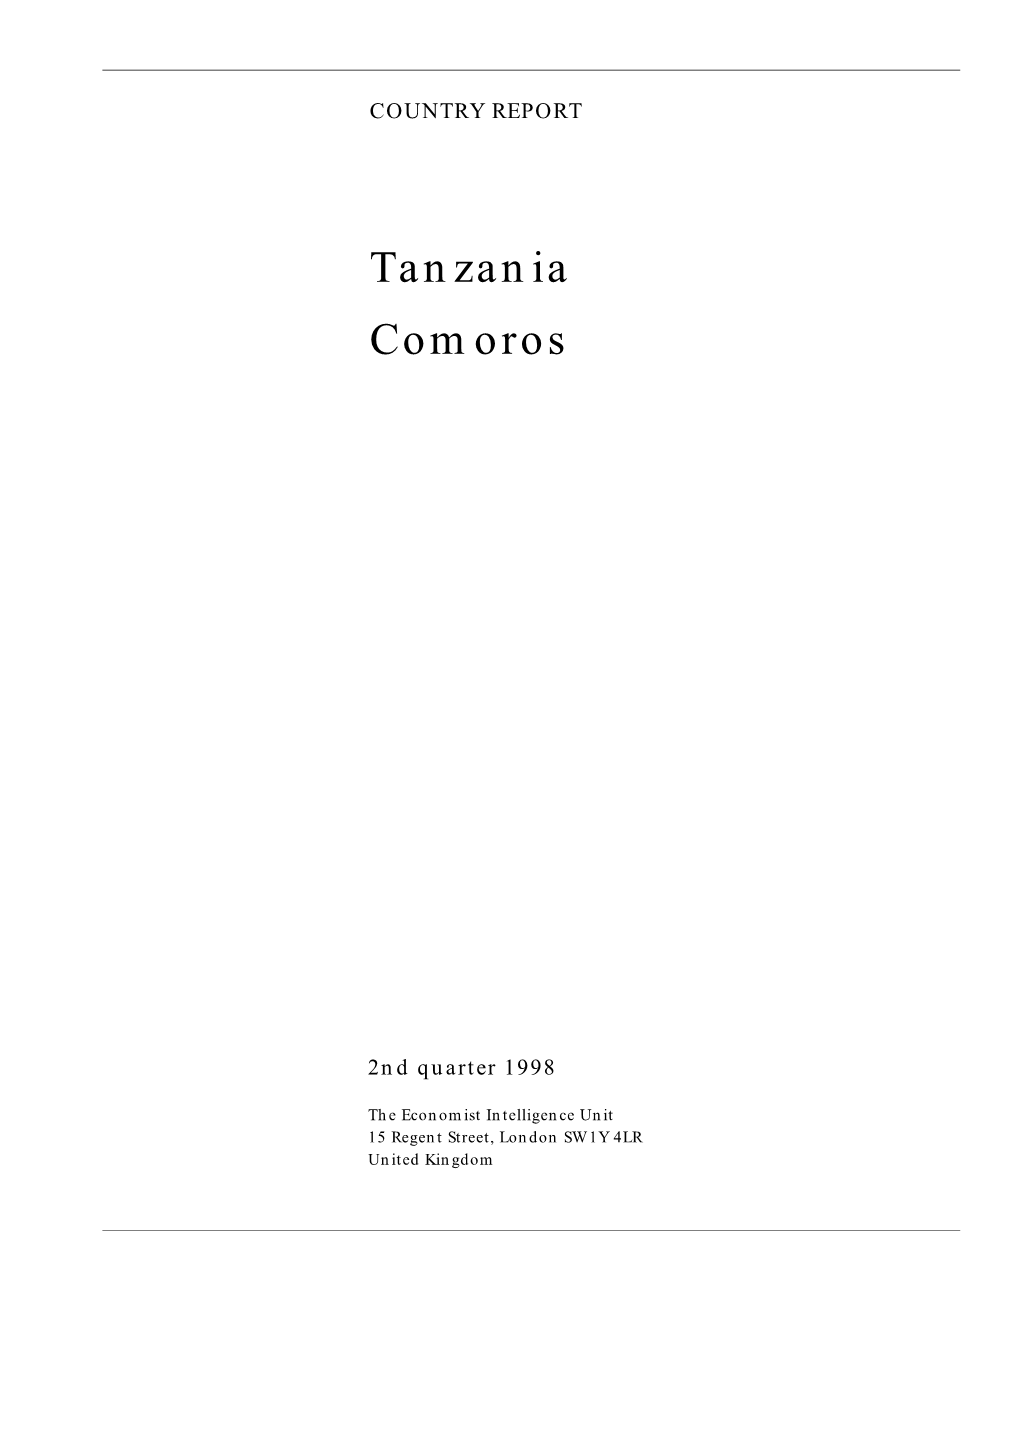 Tanzania Comoros